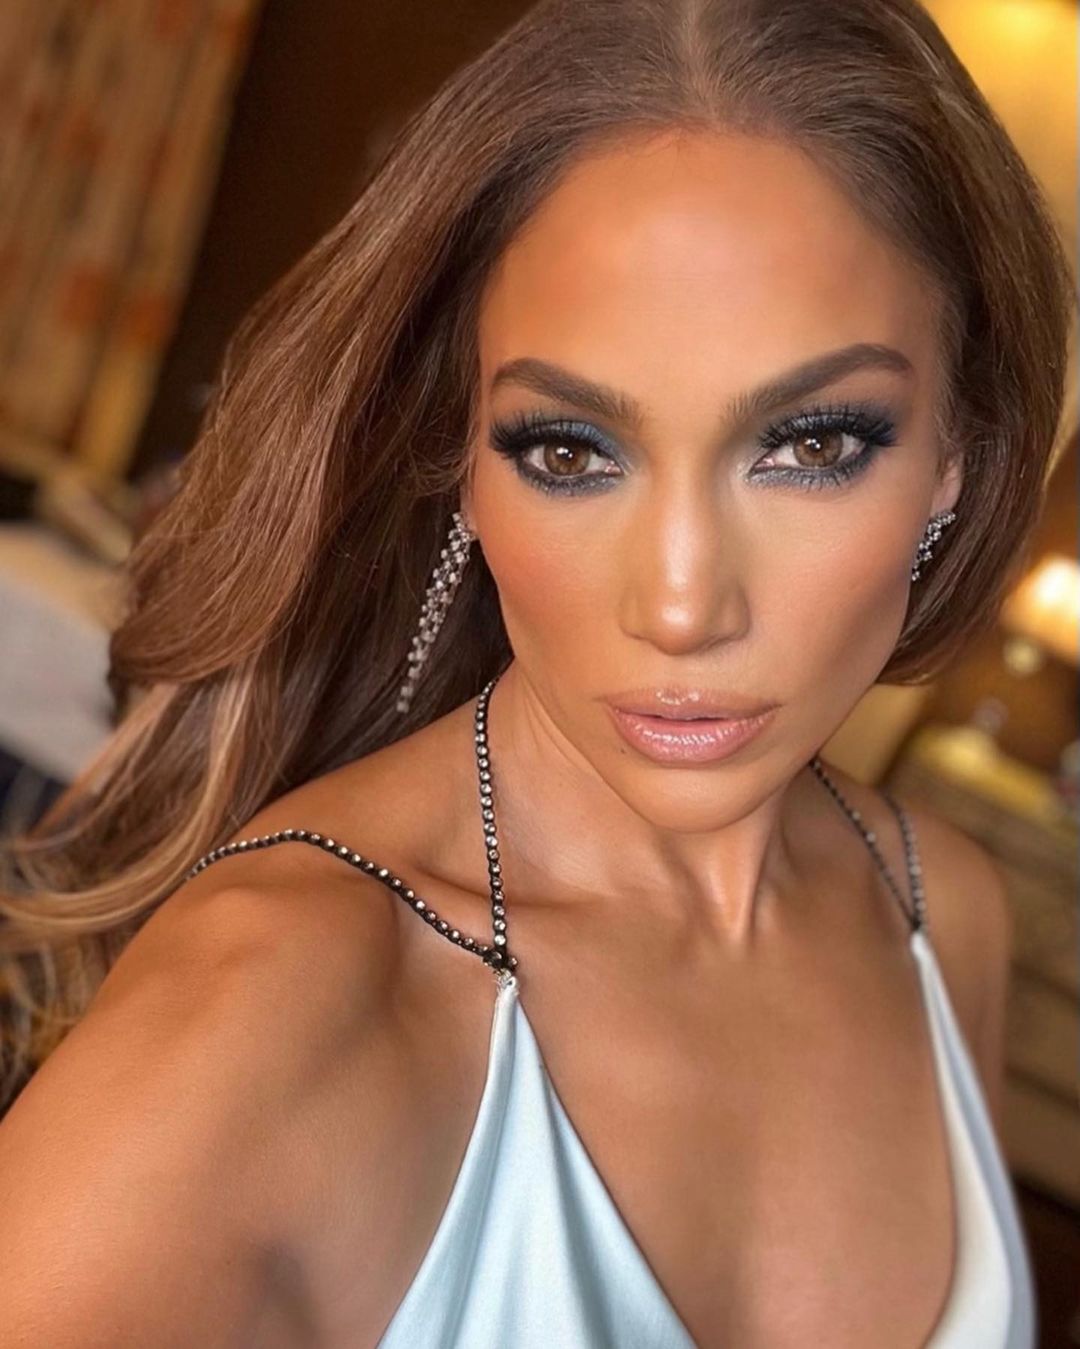 Jennifer Lopez Bikini Selfies! - Photo 17